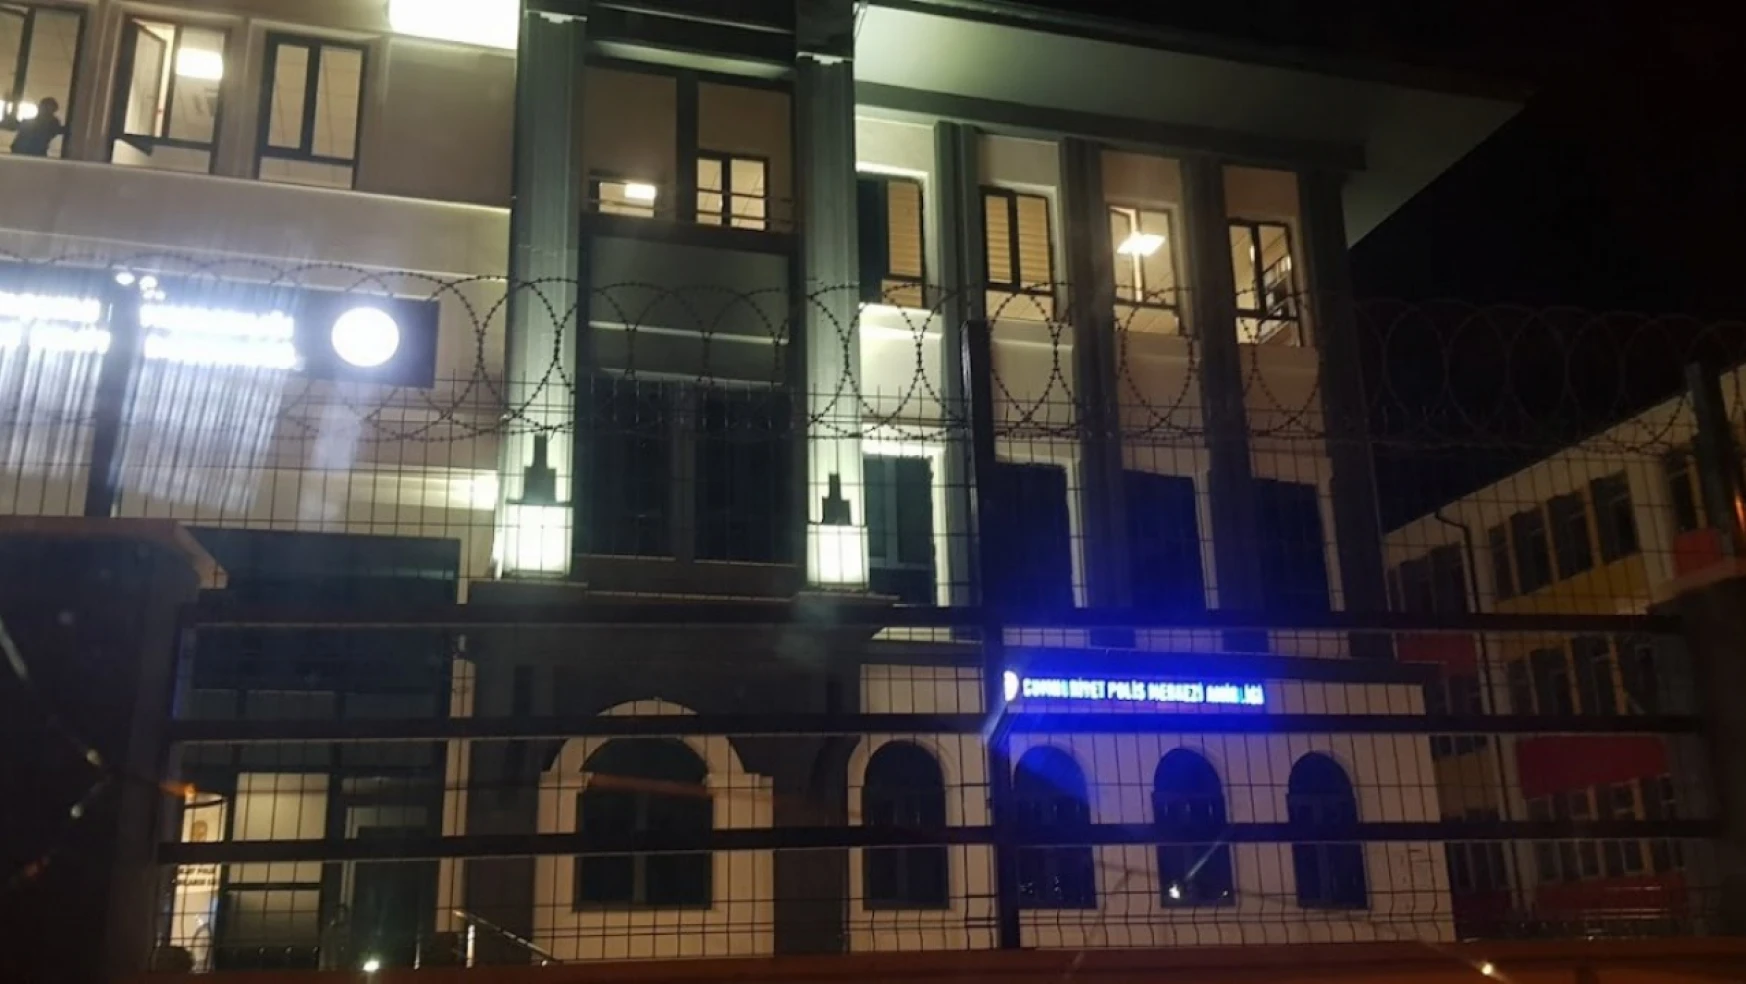 Son Dakika: Konya'da Polis Merkezi Önünde Silah Sesleri Duyuldu!